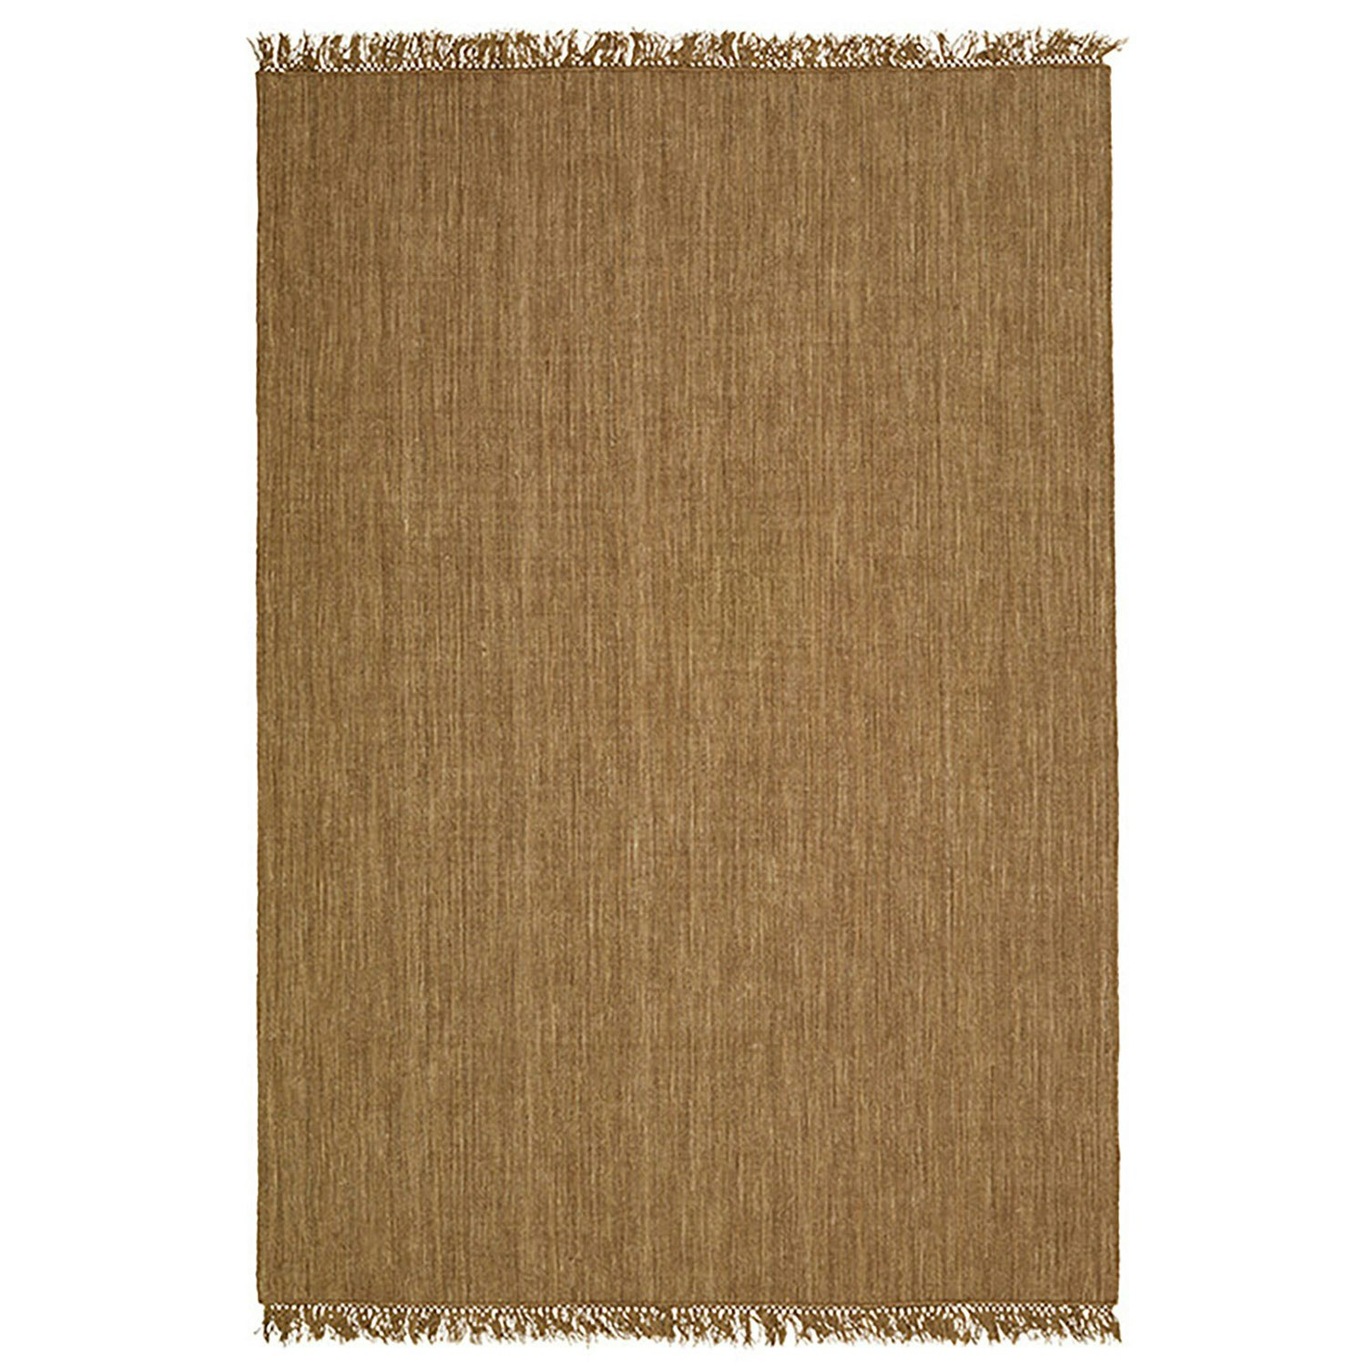 Nanda Dhurry Wool Rug 170x240 cm, Beige